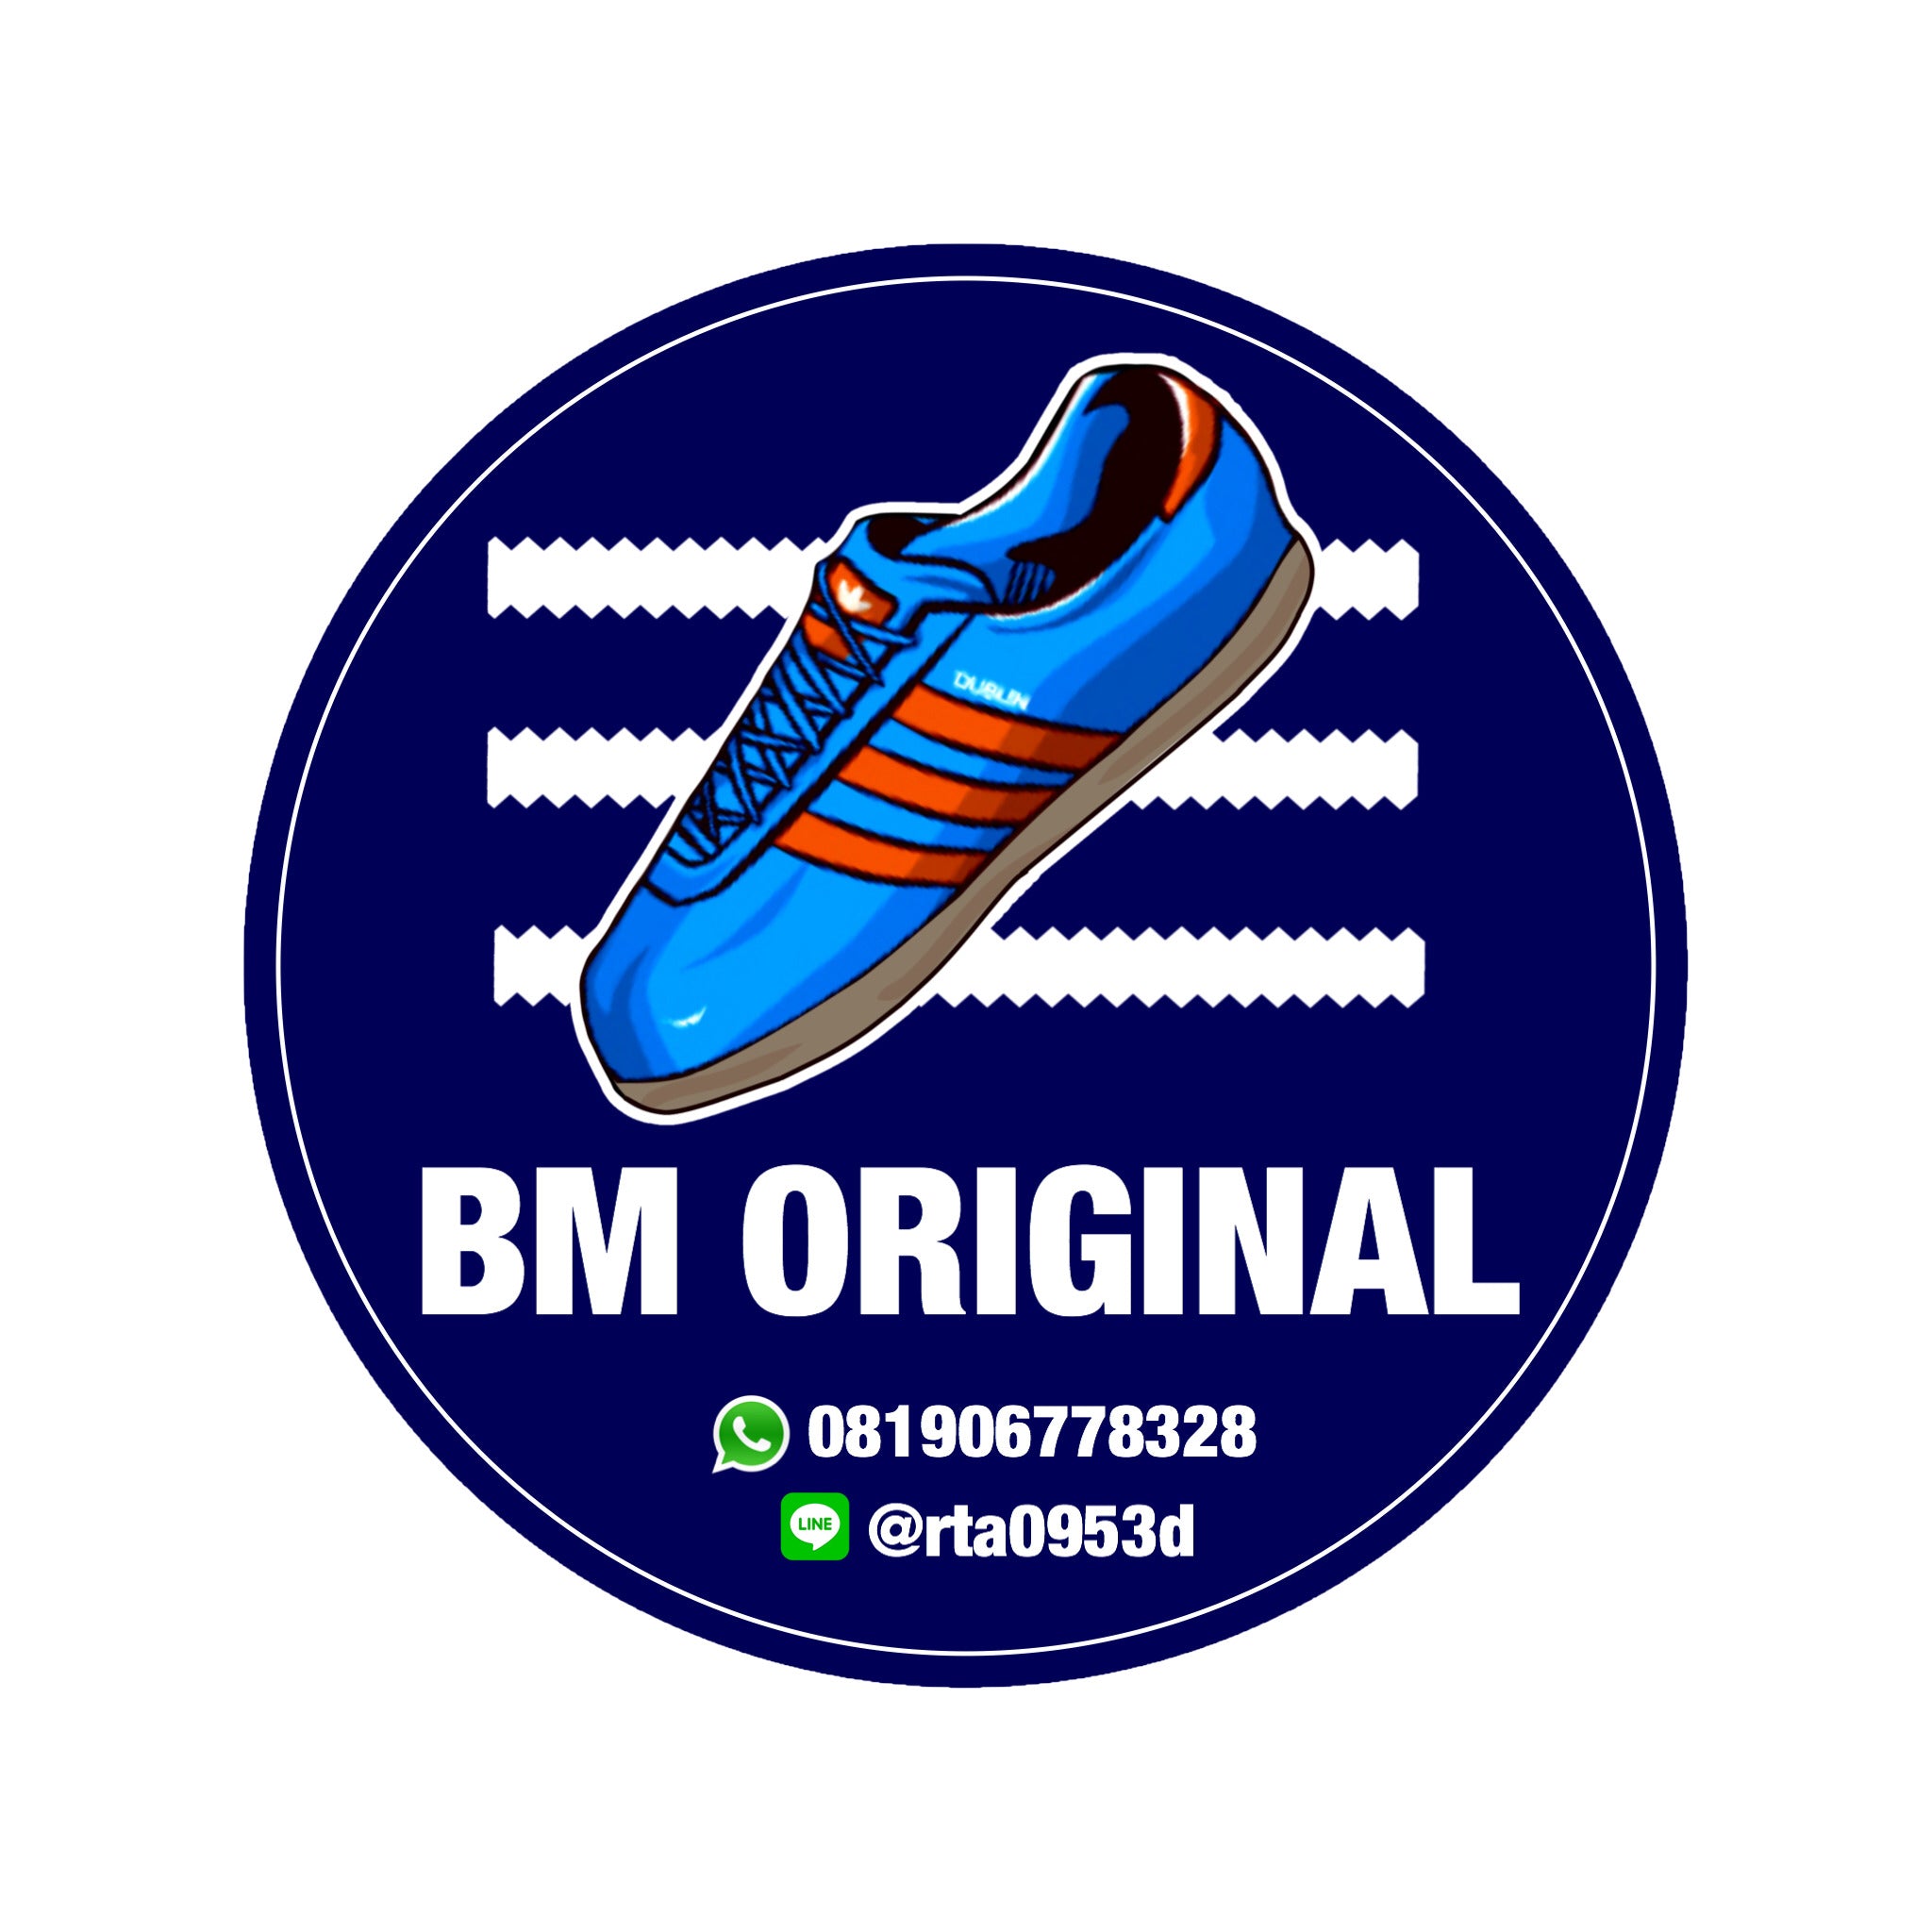 BM STORE ORIGINAL FOOTWEAR